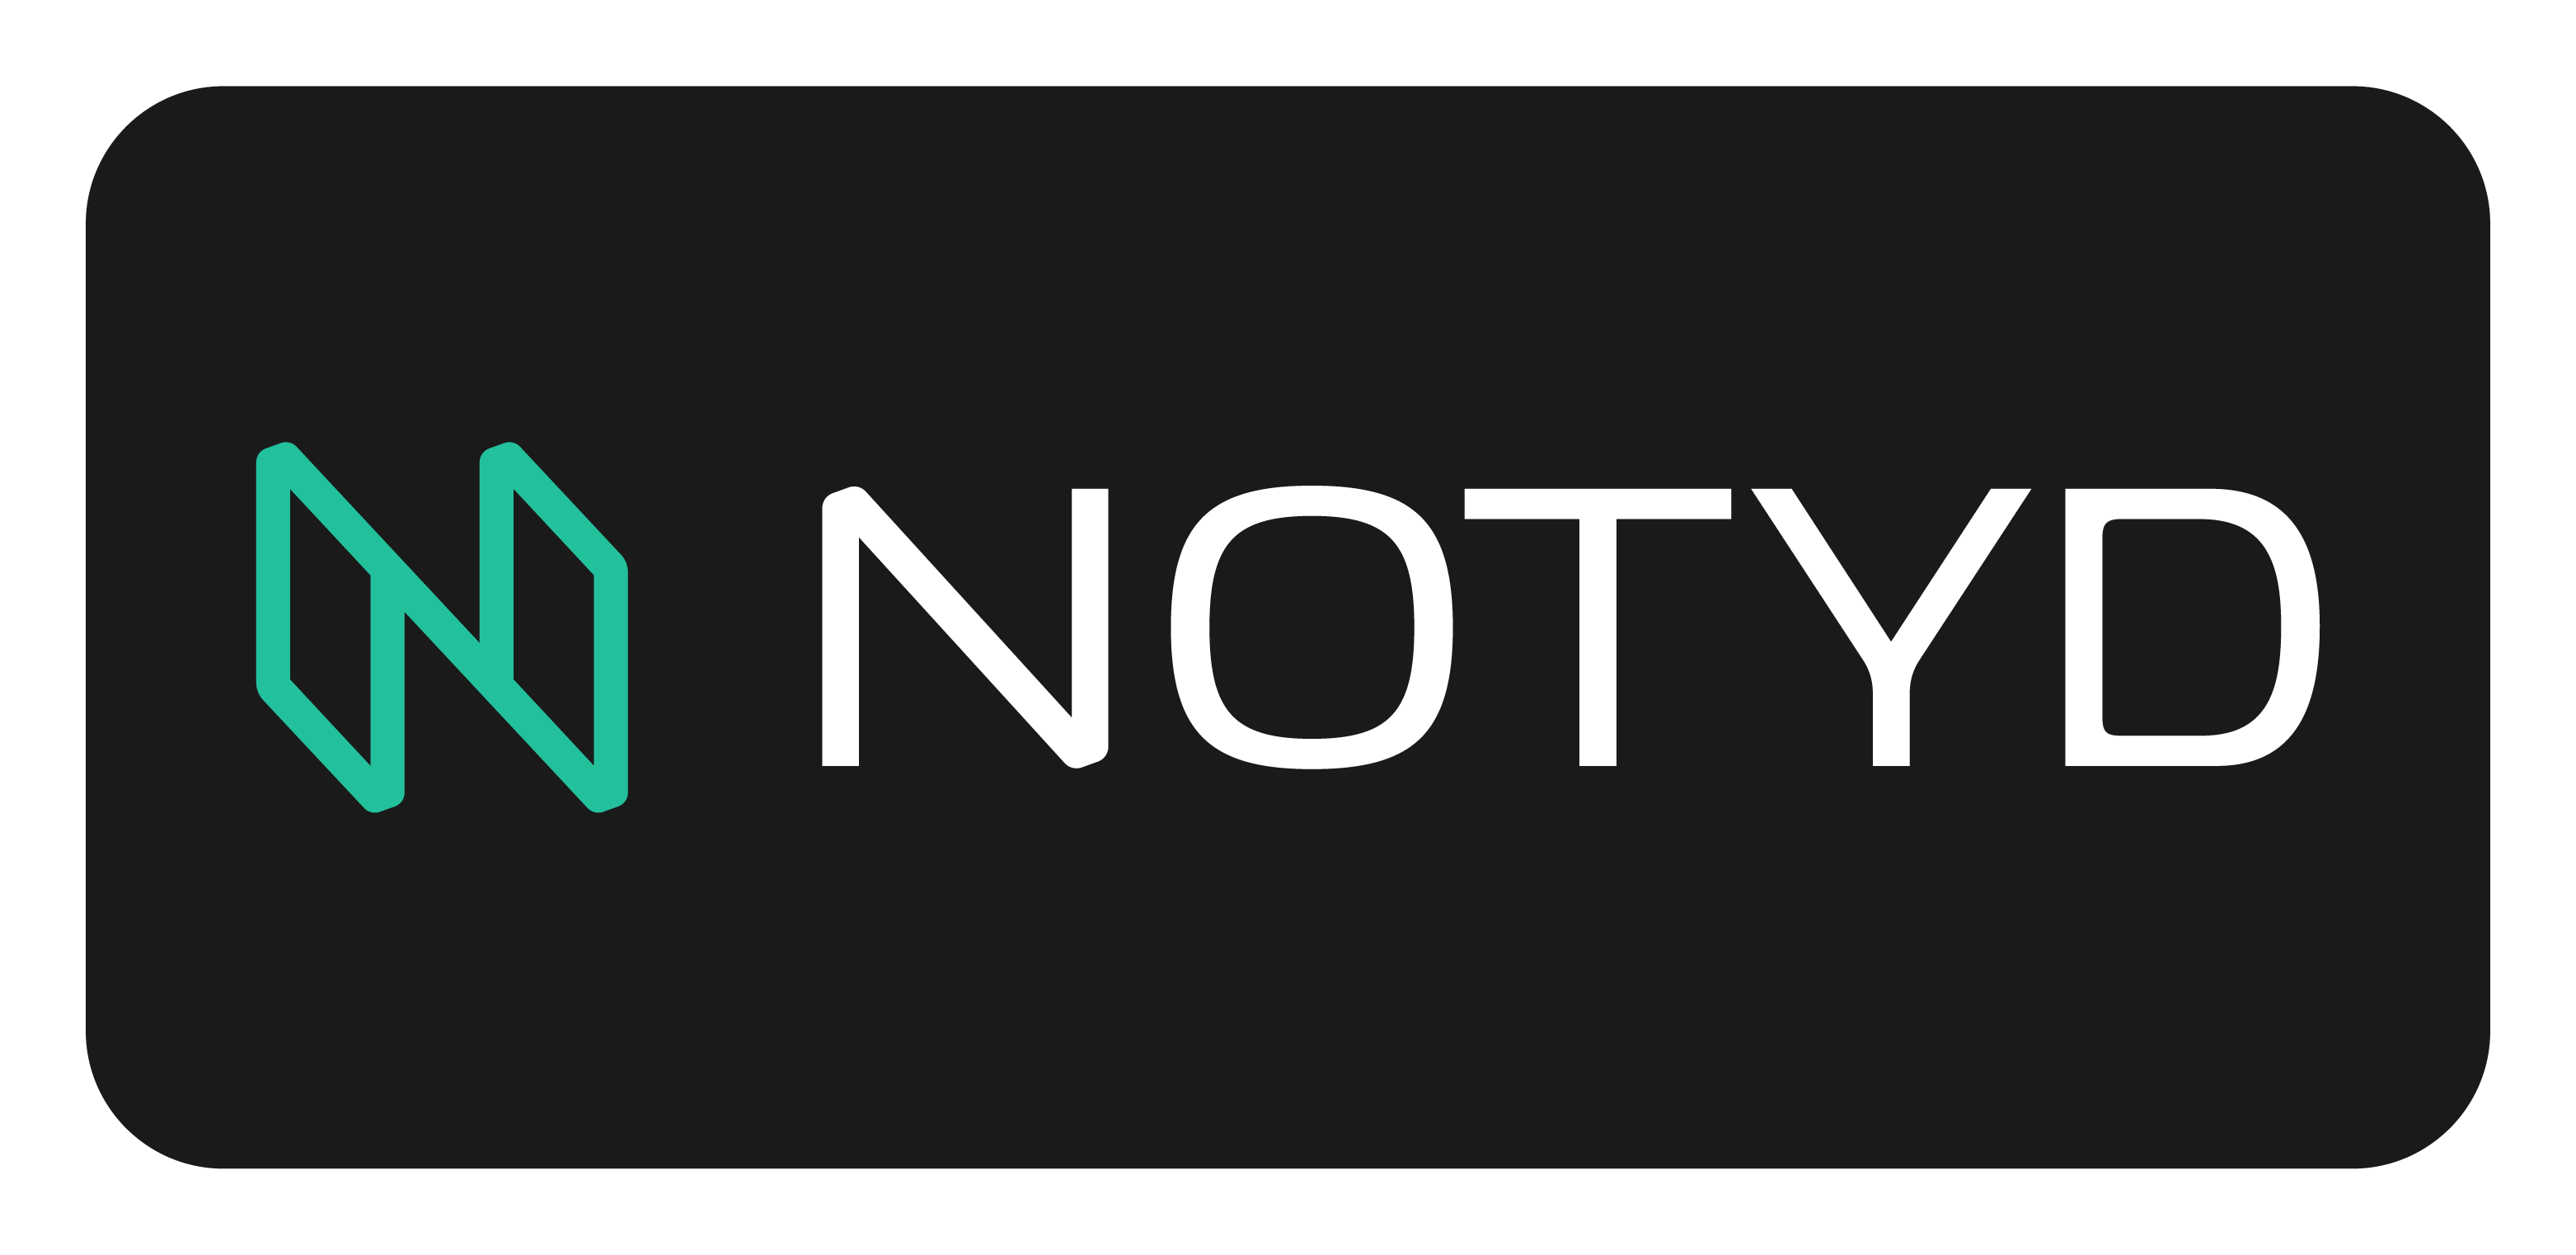 NOTYD logo